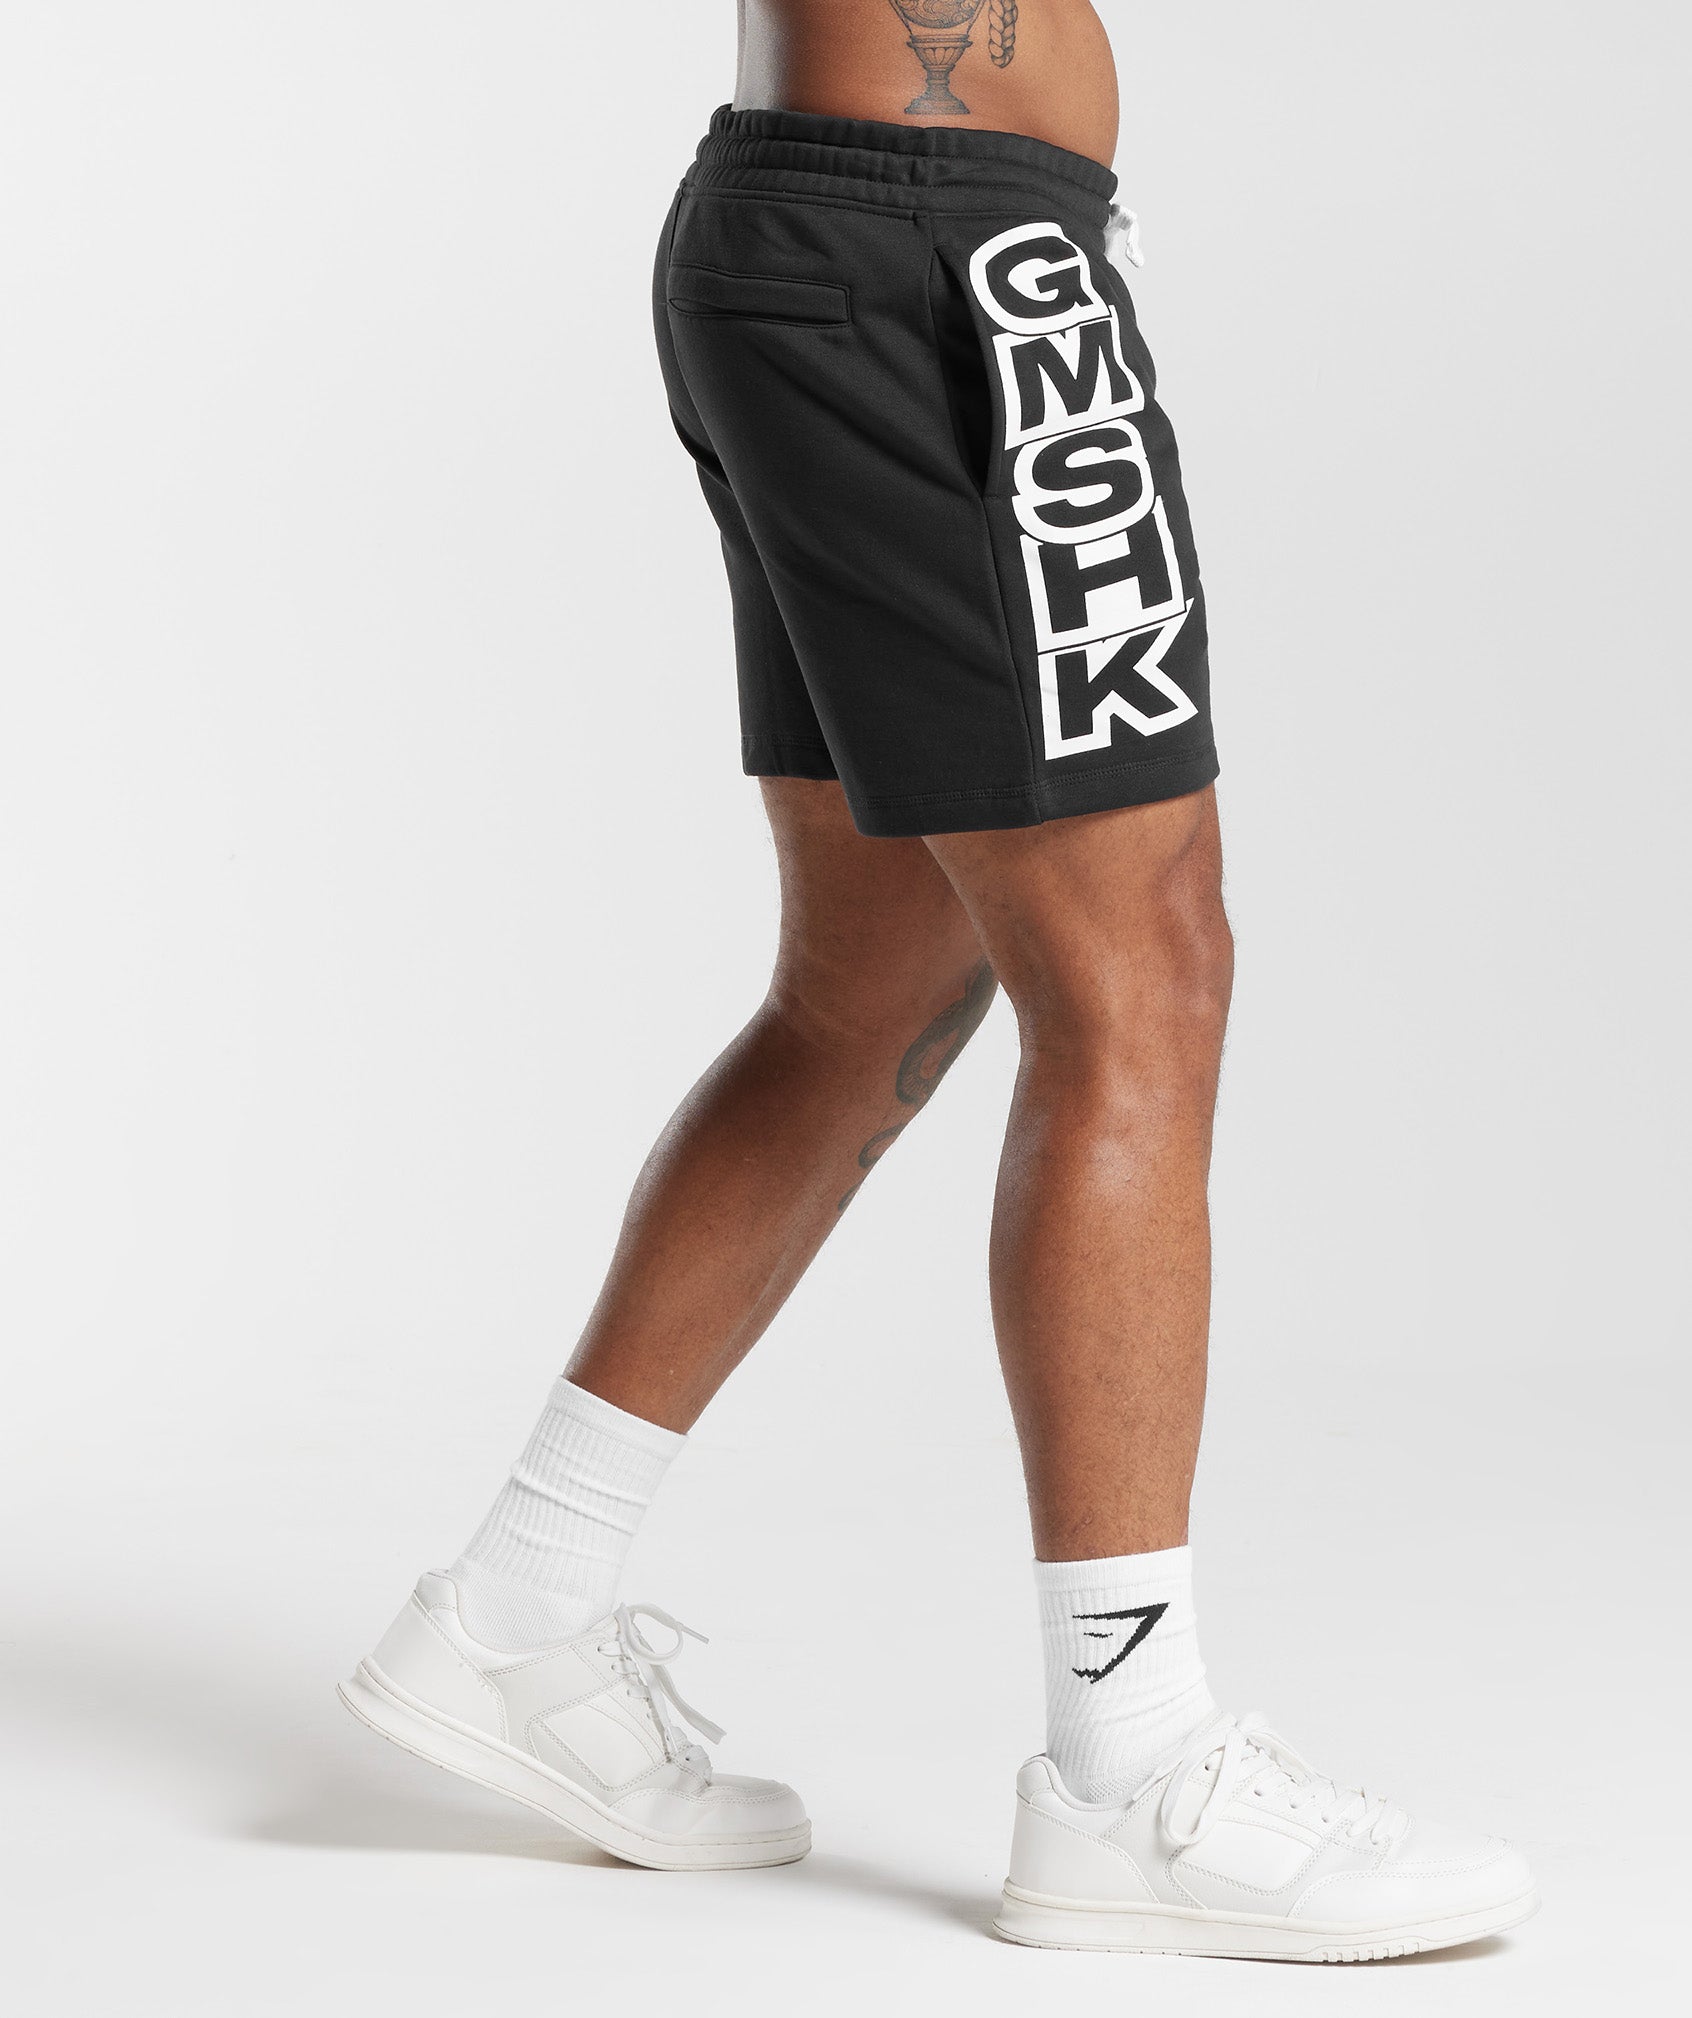 GMSHK Shorts in Black - view 3